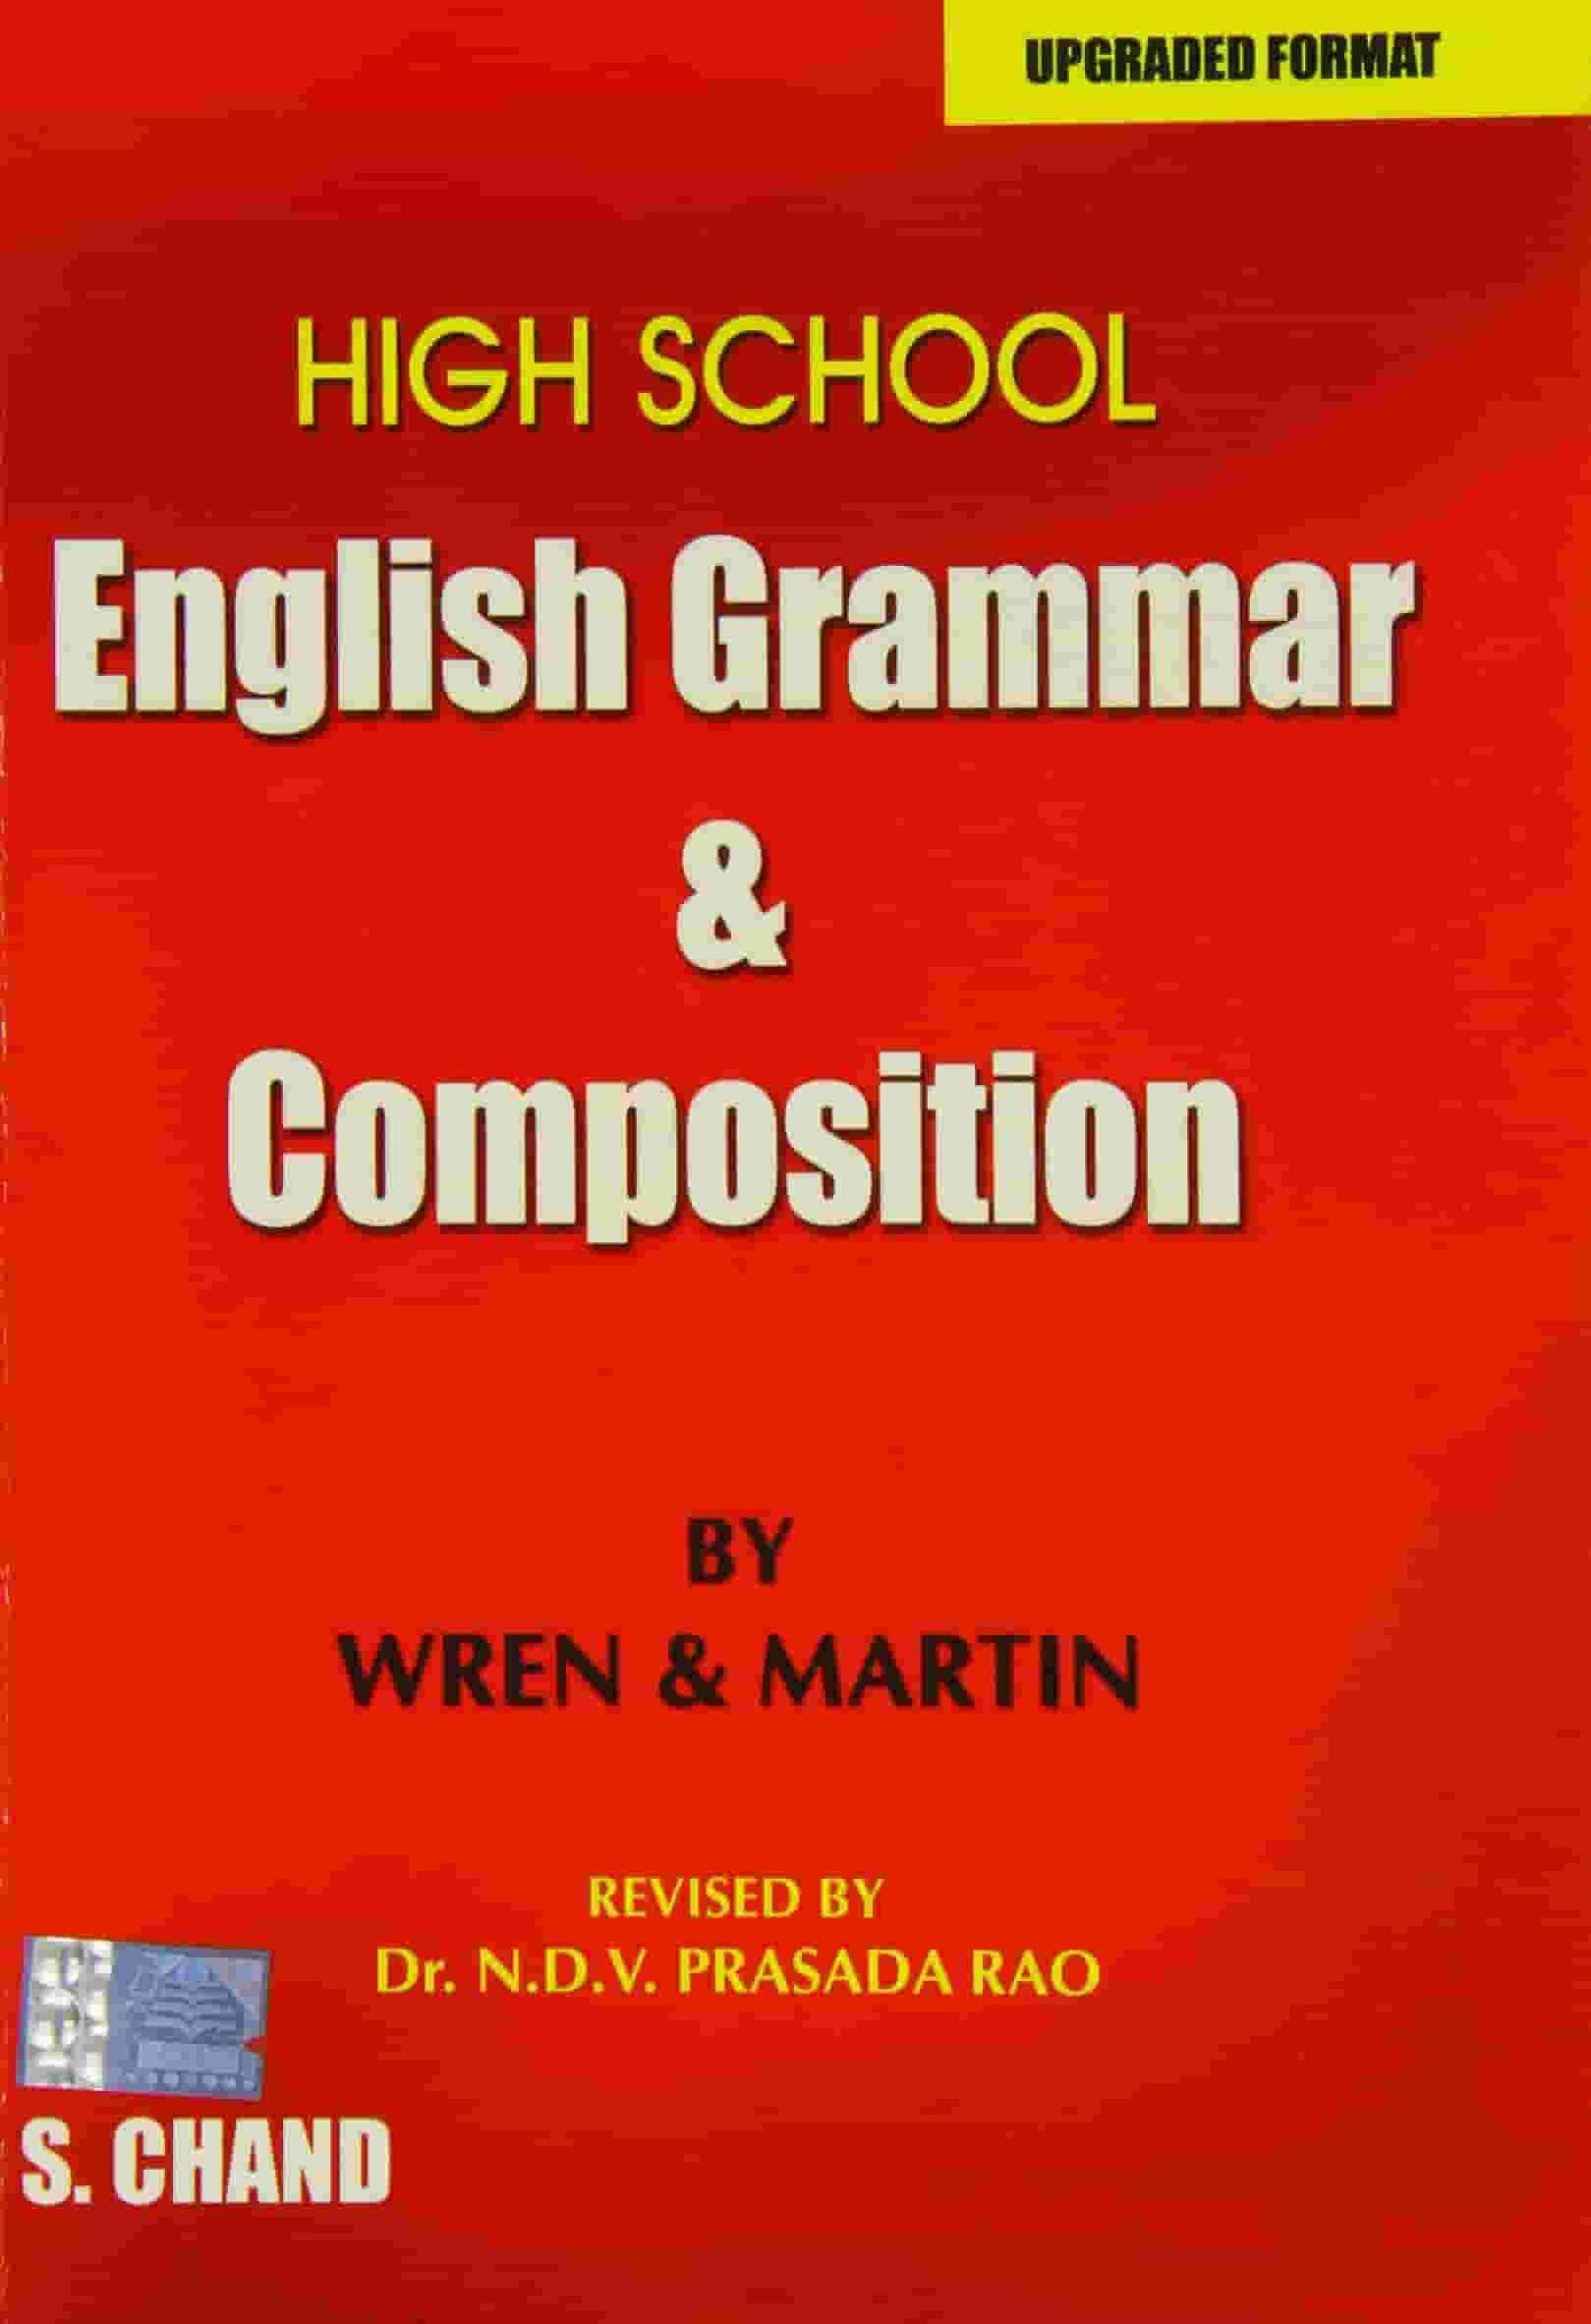 English Grammar by Wren & Martin